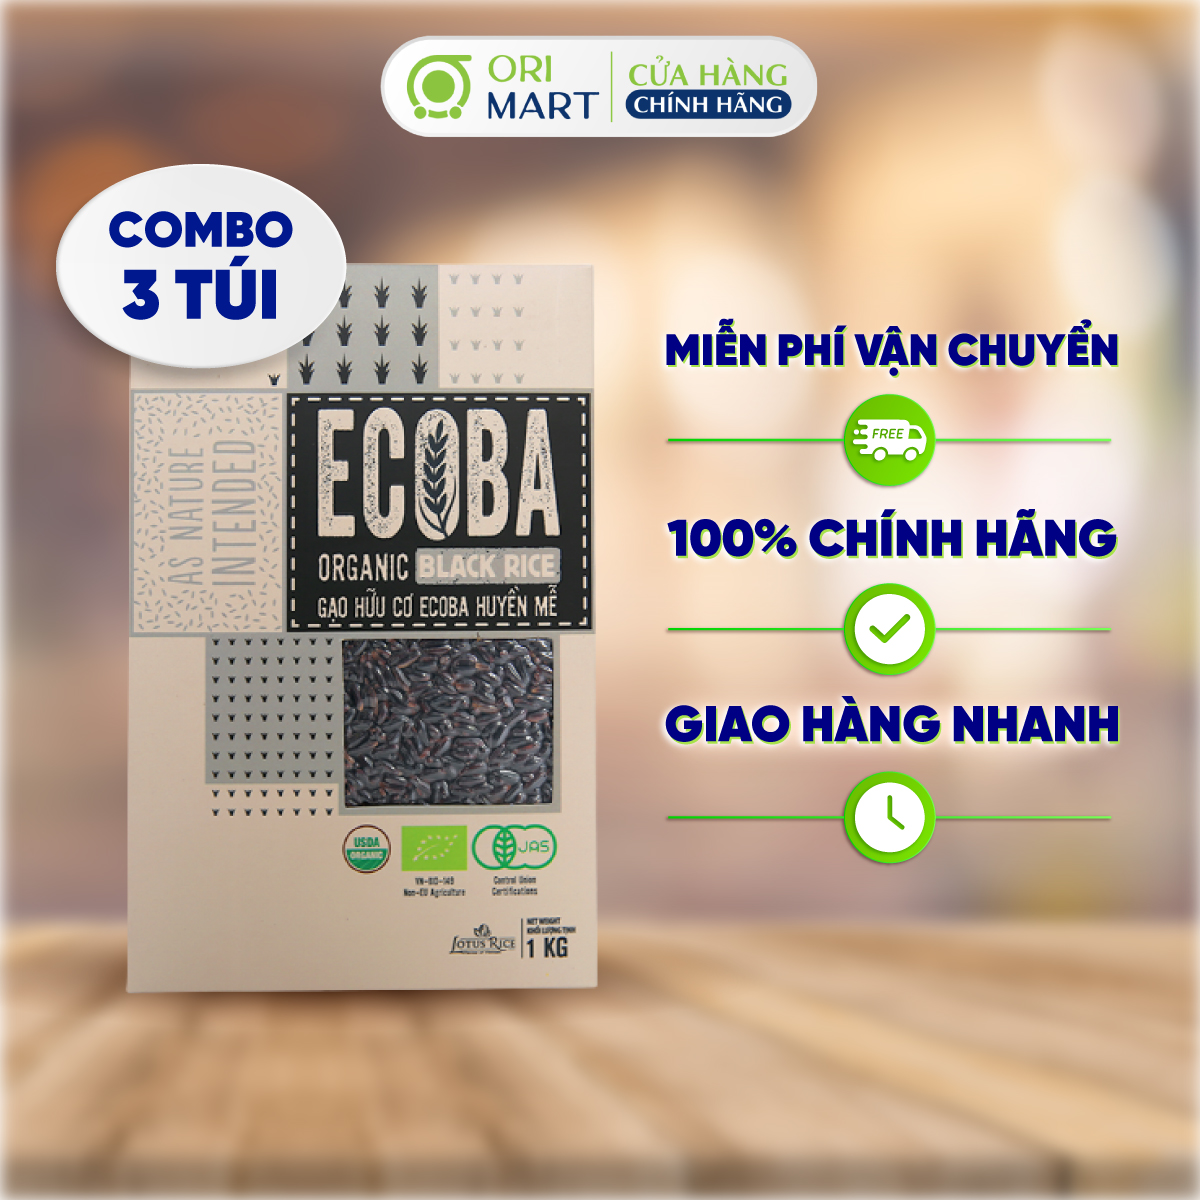 Combo 3 Gạo Lứt Hữu Cơ ECOBA Huyền Mễ Ecoba Organic Black Rice Cao Cấp Thơm Ngon Dẻo Ngọt Hỗ Trợ Giảm Cân Túi 1kg ORIMART